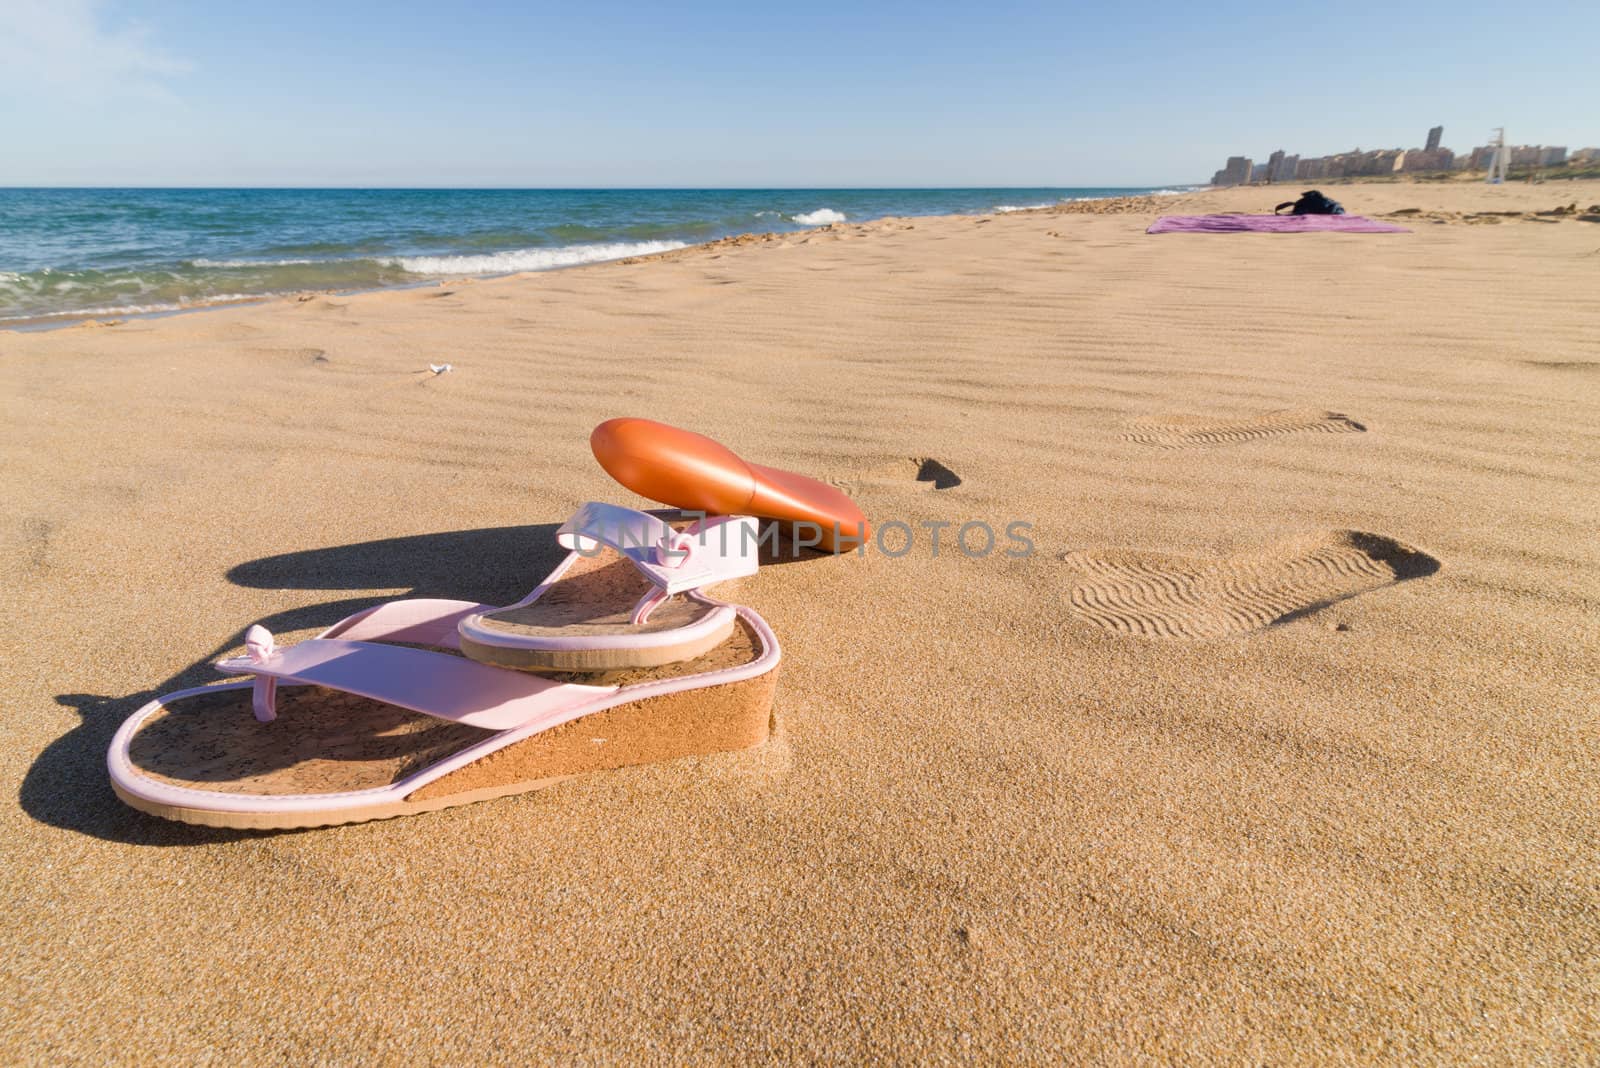 Sandals and sunscreen on a sunny sand beach